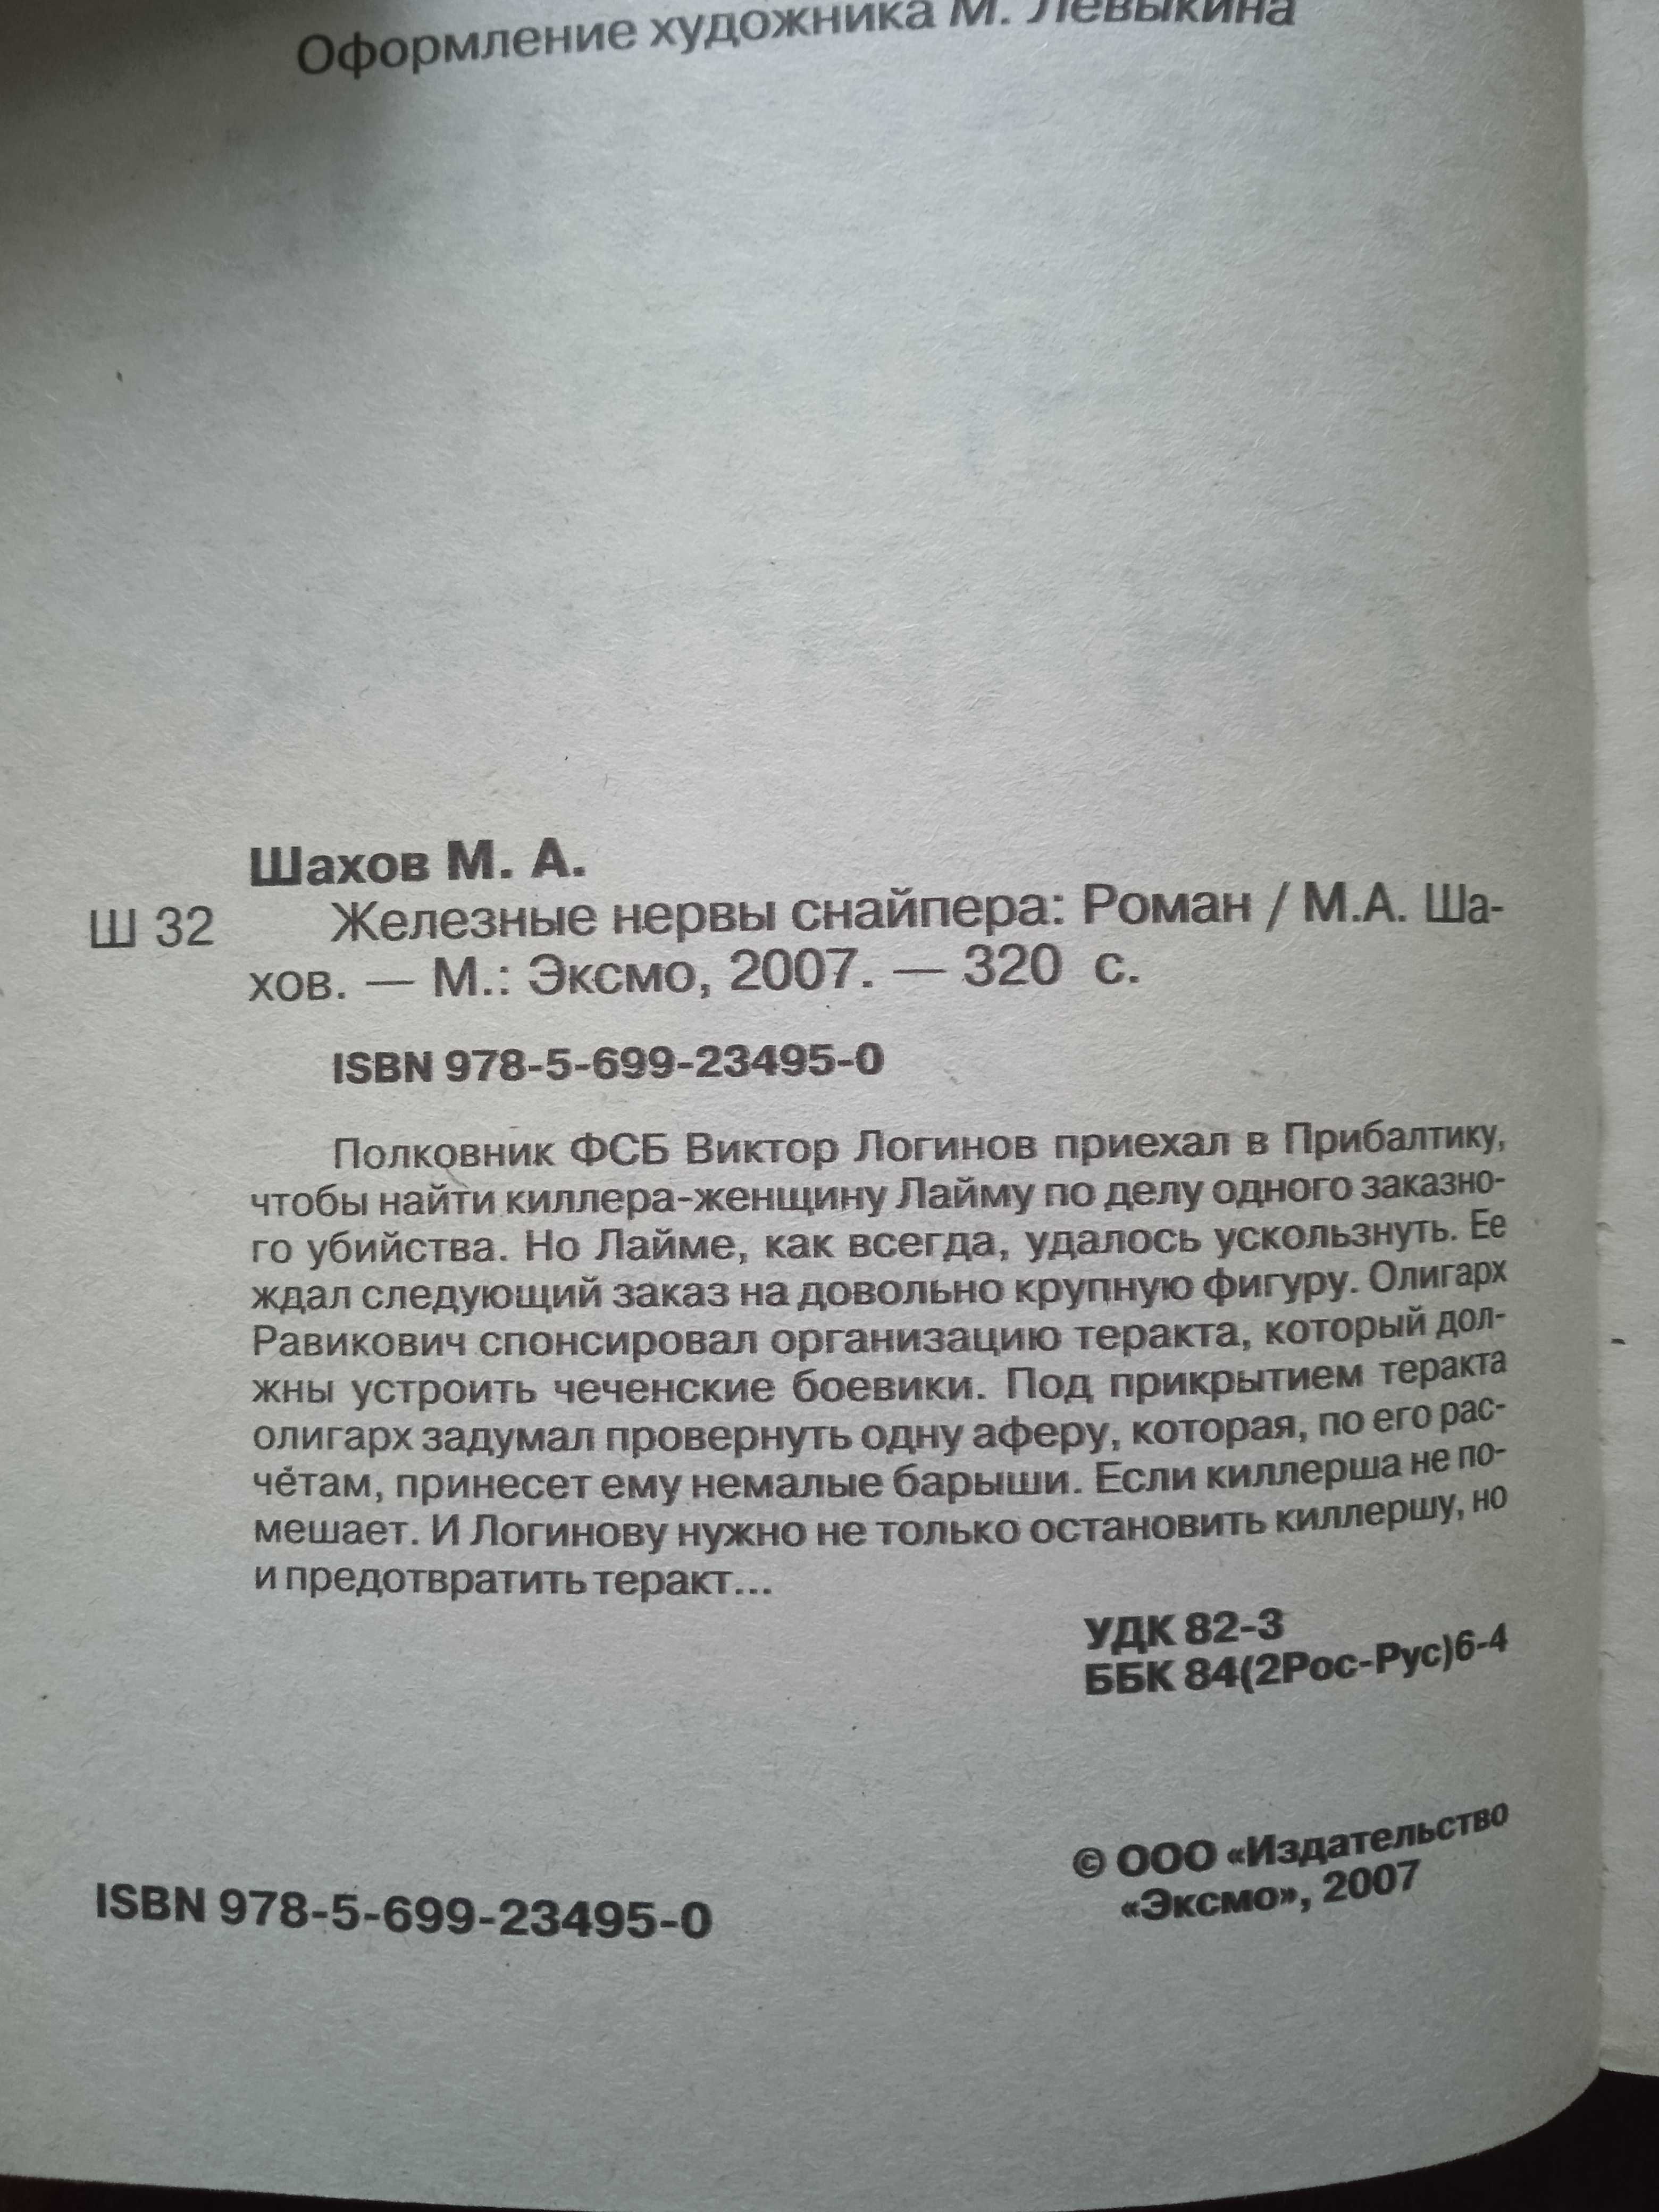 Книга Максим Шахов "Железные нервы снайпера", 2007, 320с.